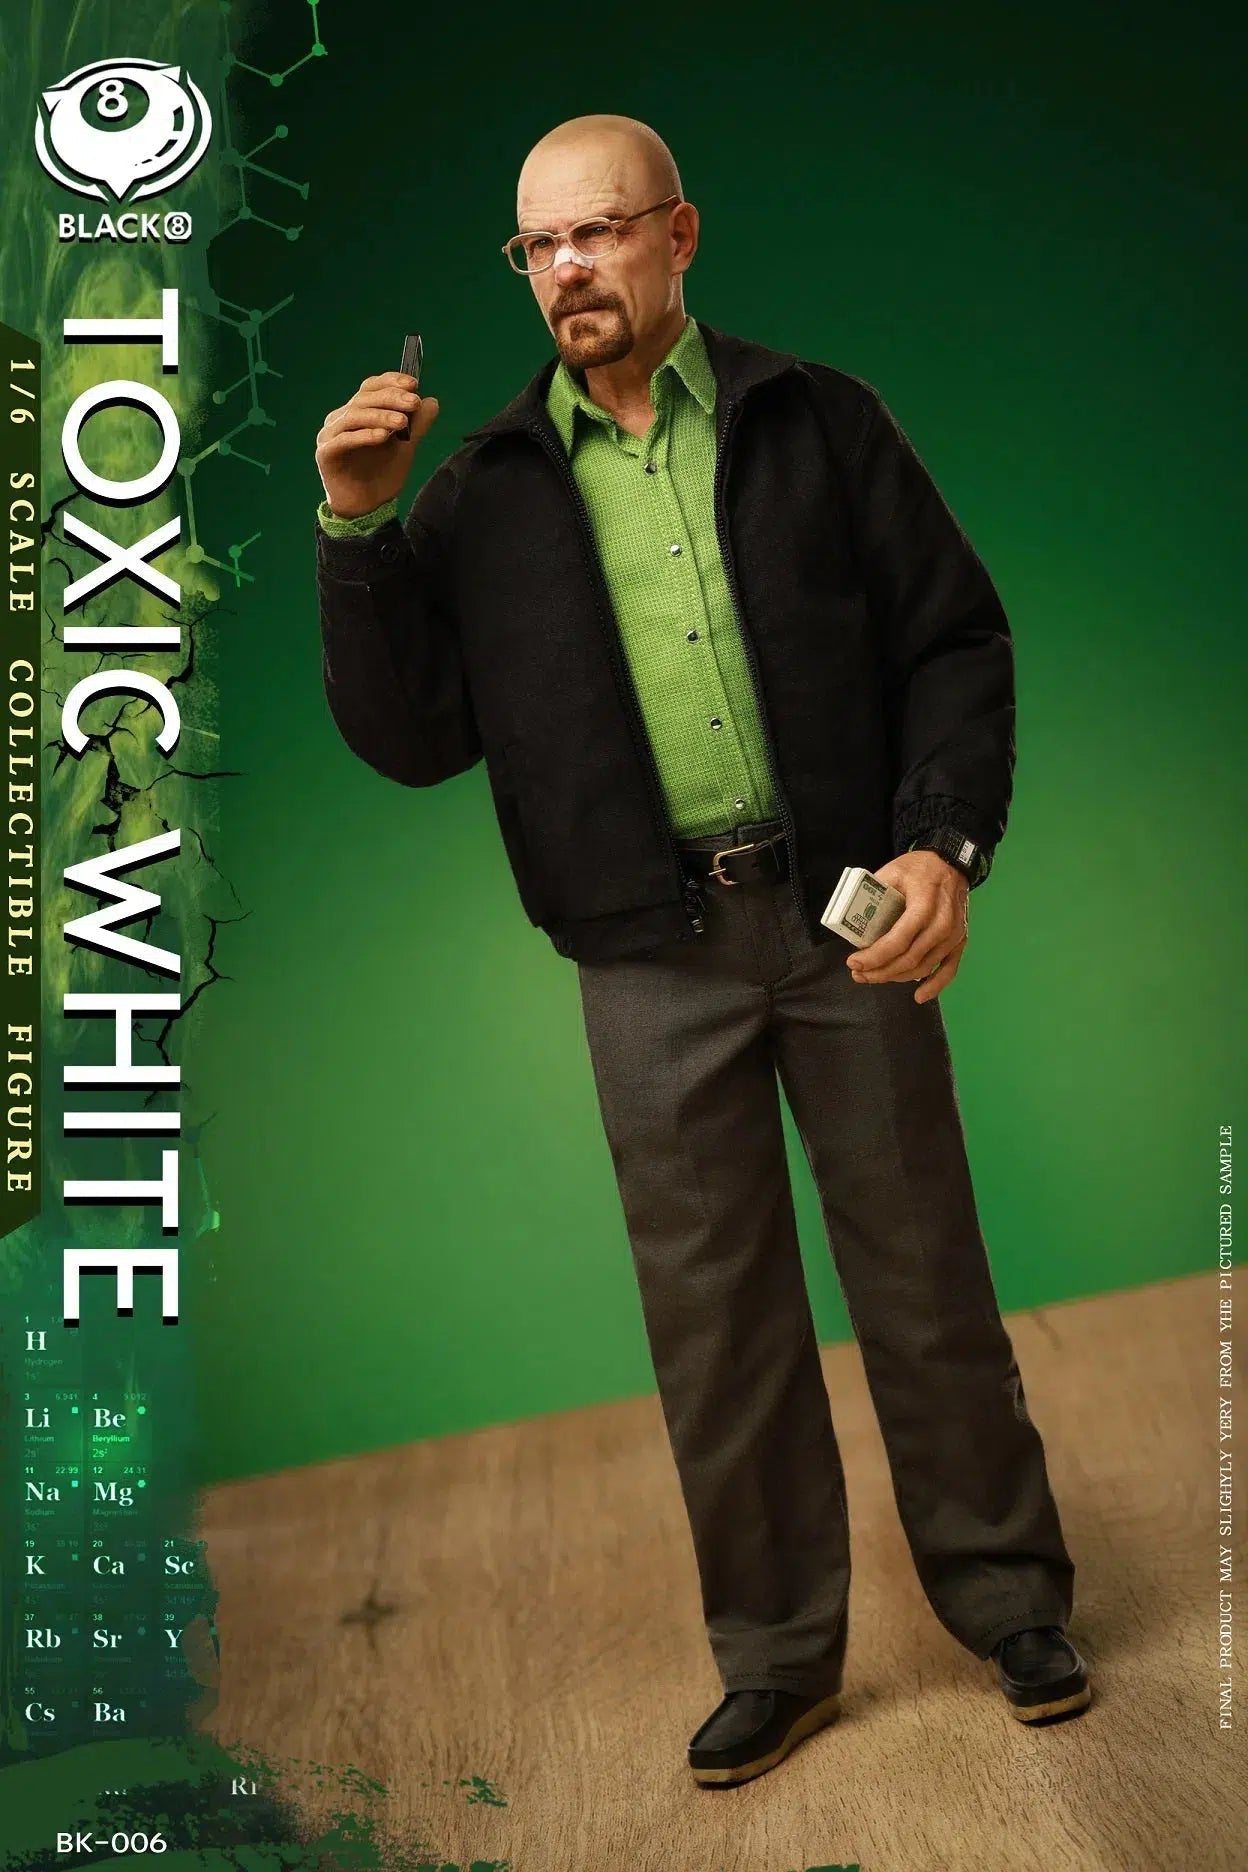 Toxic White: Black 8 Toys: Sixth Scale Figure Black 8 Toys